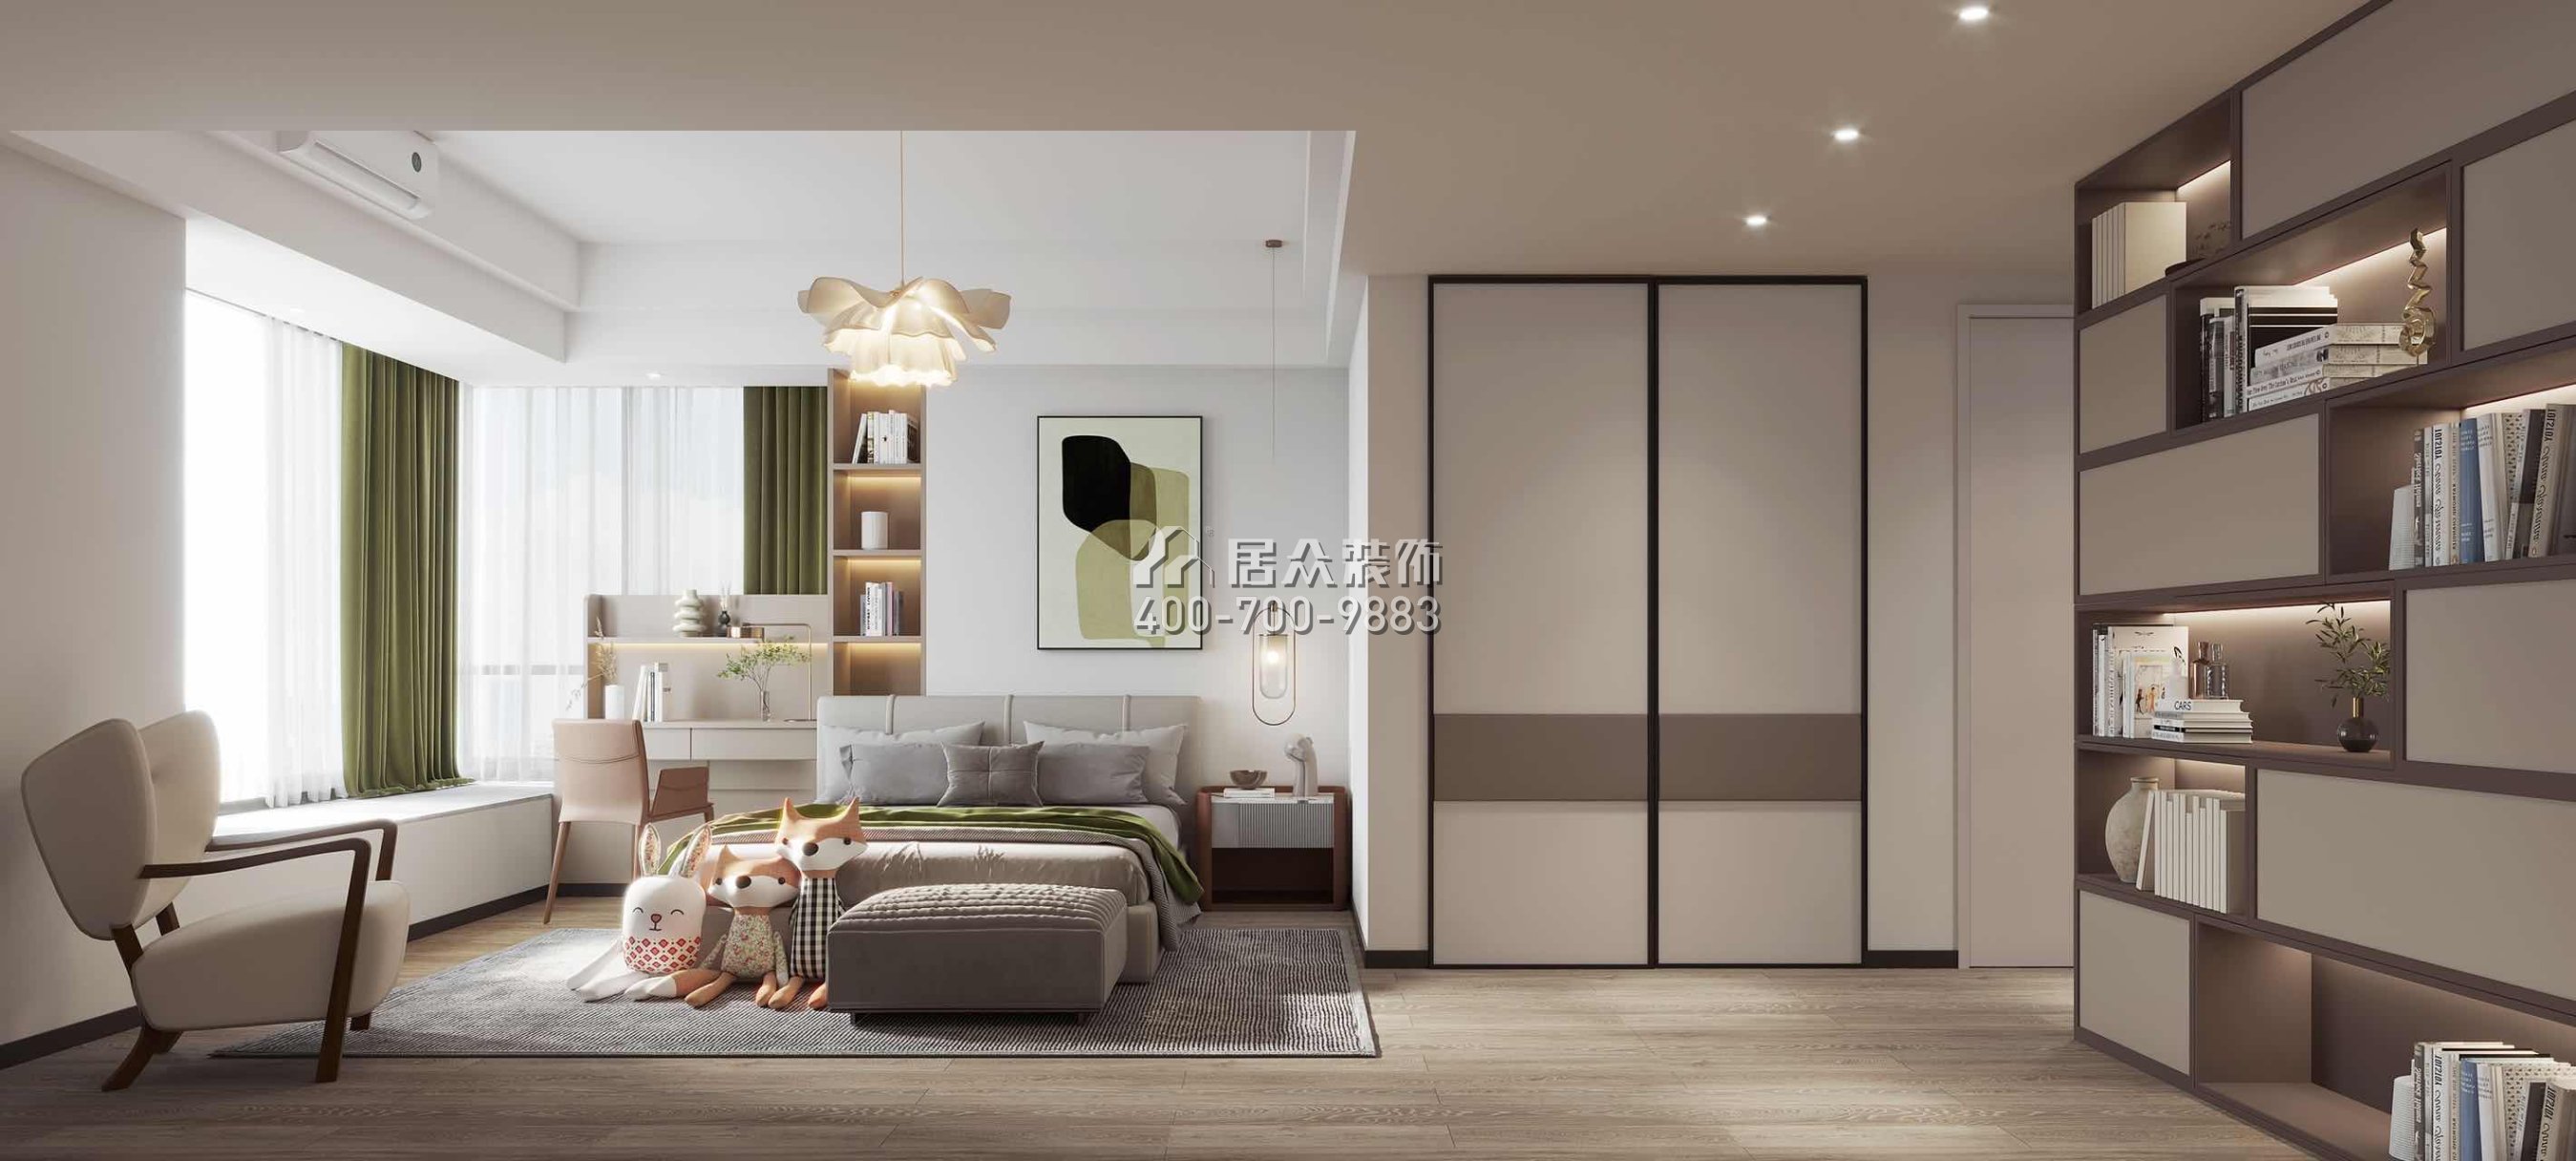 華發世紀城240平方米現代簡約風格復式戶型臥室裝修效果圖